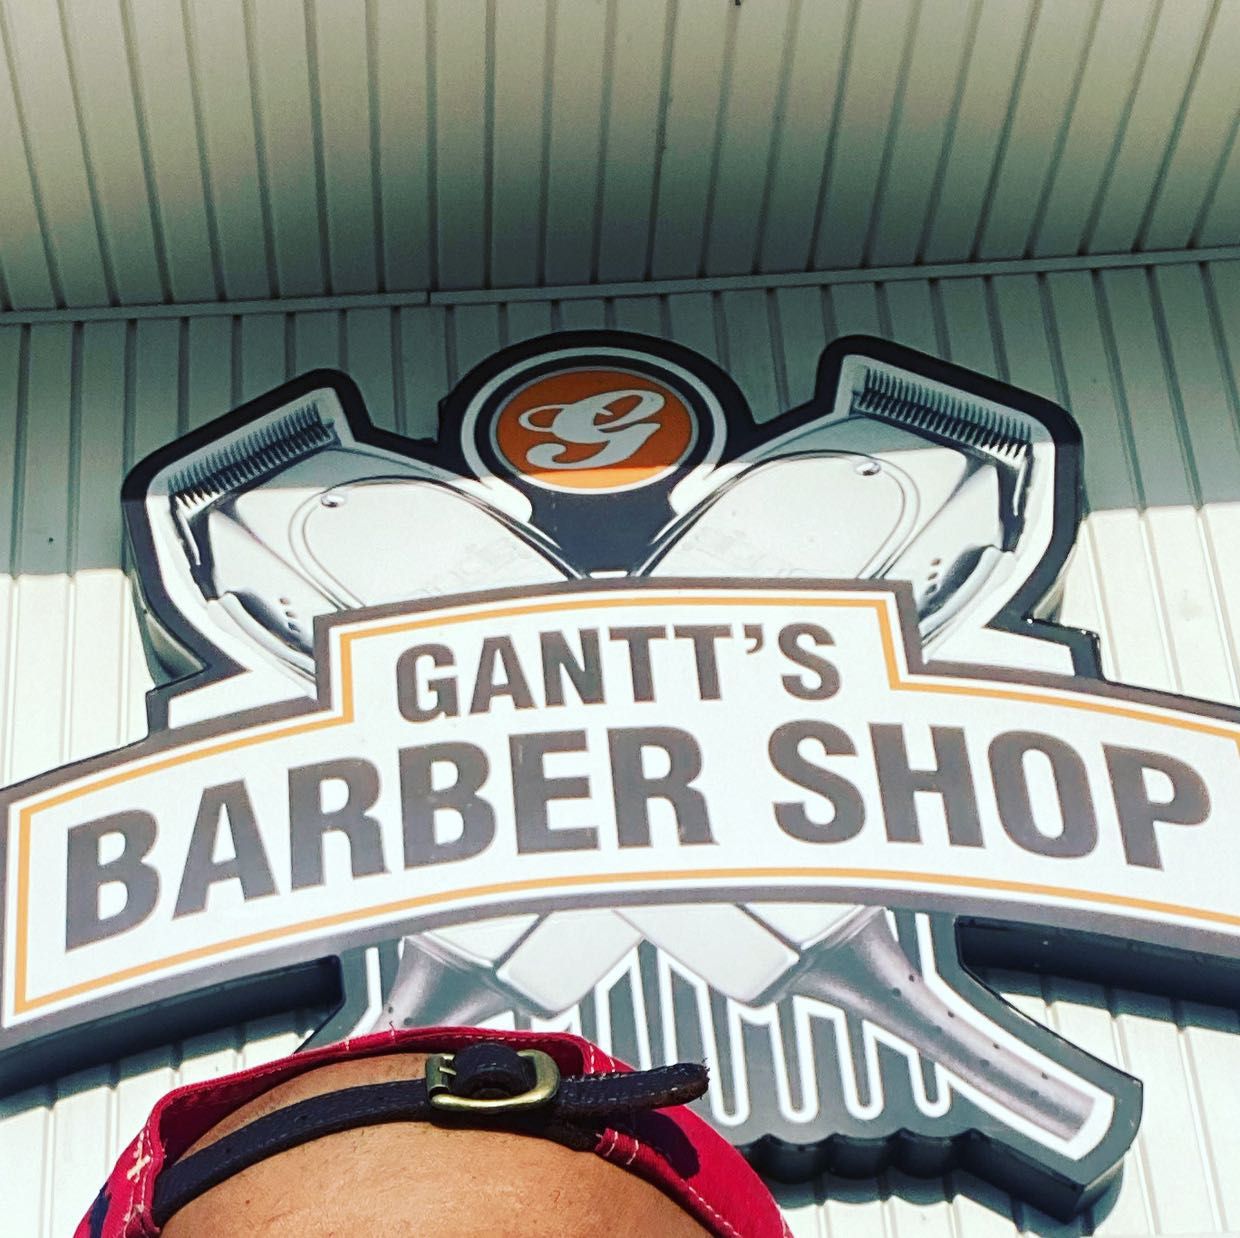 Eddie Wilson @Gantts_barber_shop, Dixie Hwy, 4632, Louisville, 40216